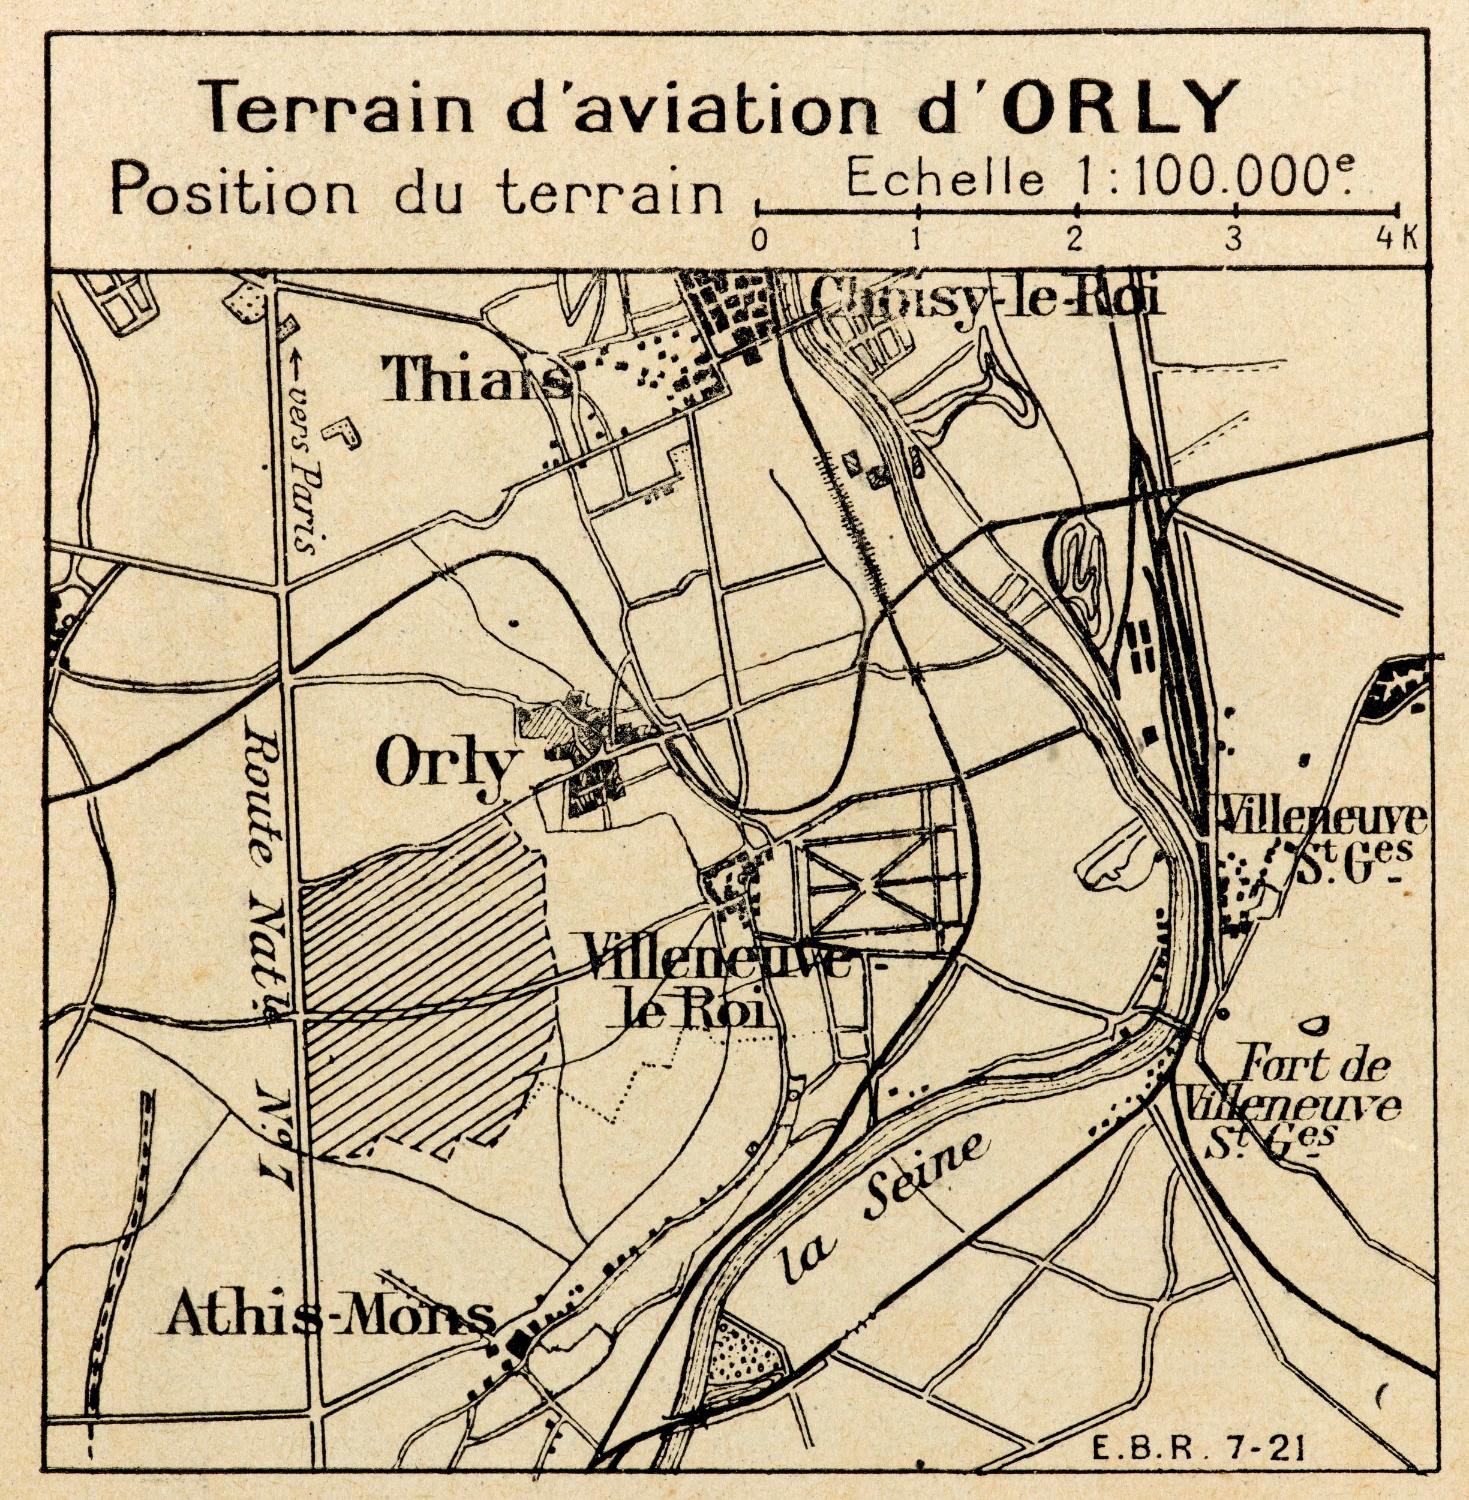 Le terrain d'aviation d'Orly, "Instruction aéronautique du Port aérien de Villeneuve – Orly", Bulletin de la Navigation Aérienne, n° 17, août 1921, hors-texte.